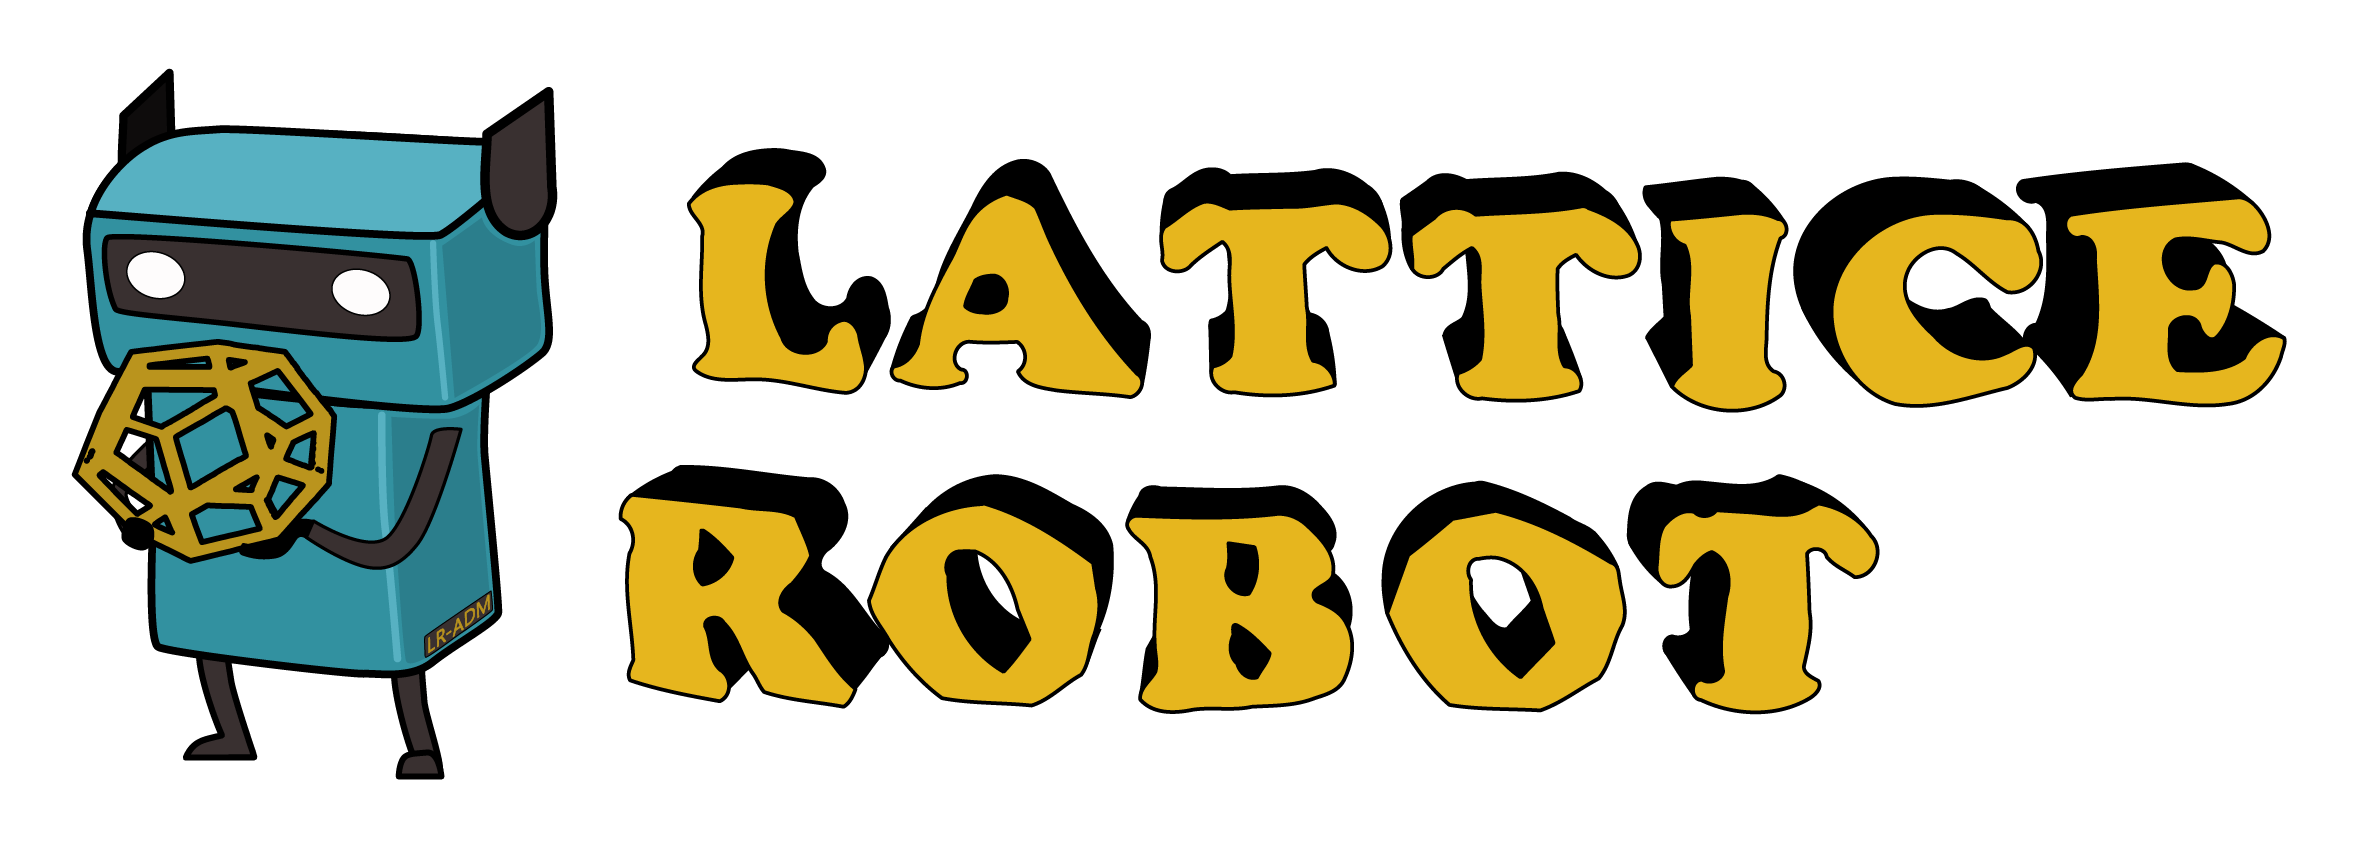 LatticeRobot